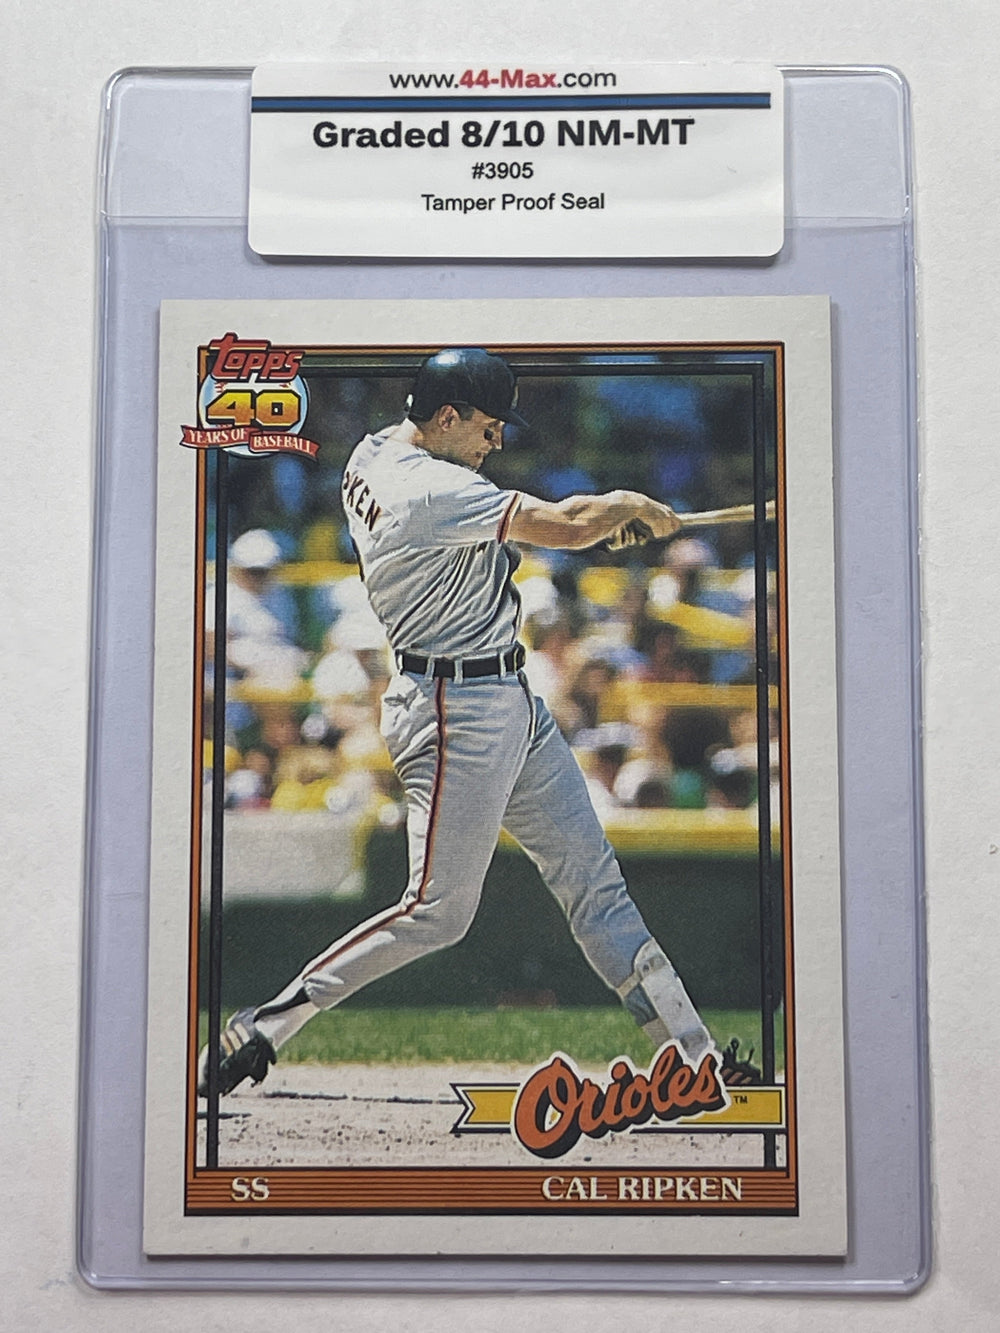 Cal Ripken Jr 1991 Topps Baseball Card. 44-Max 8/10 NM-MT #3905